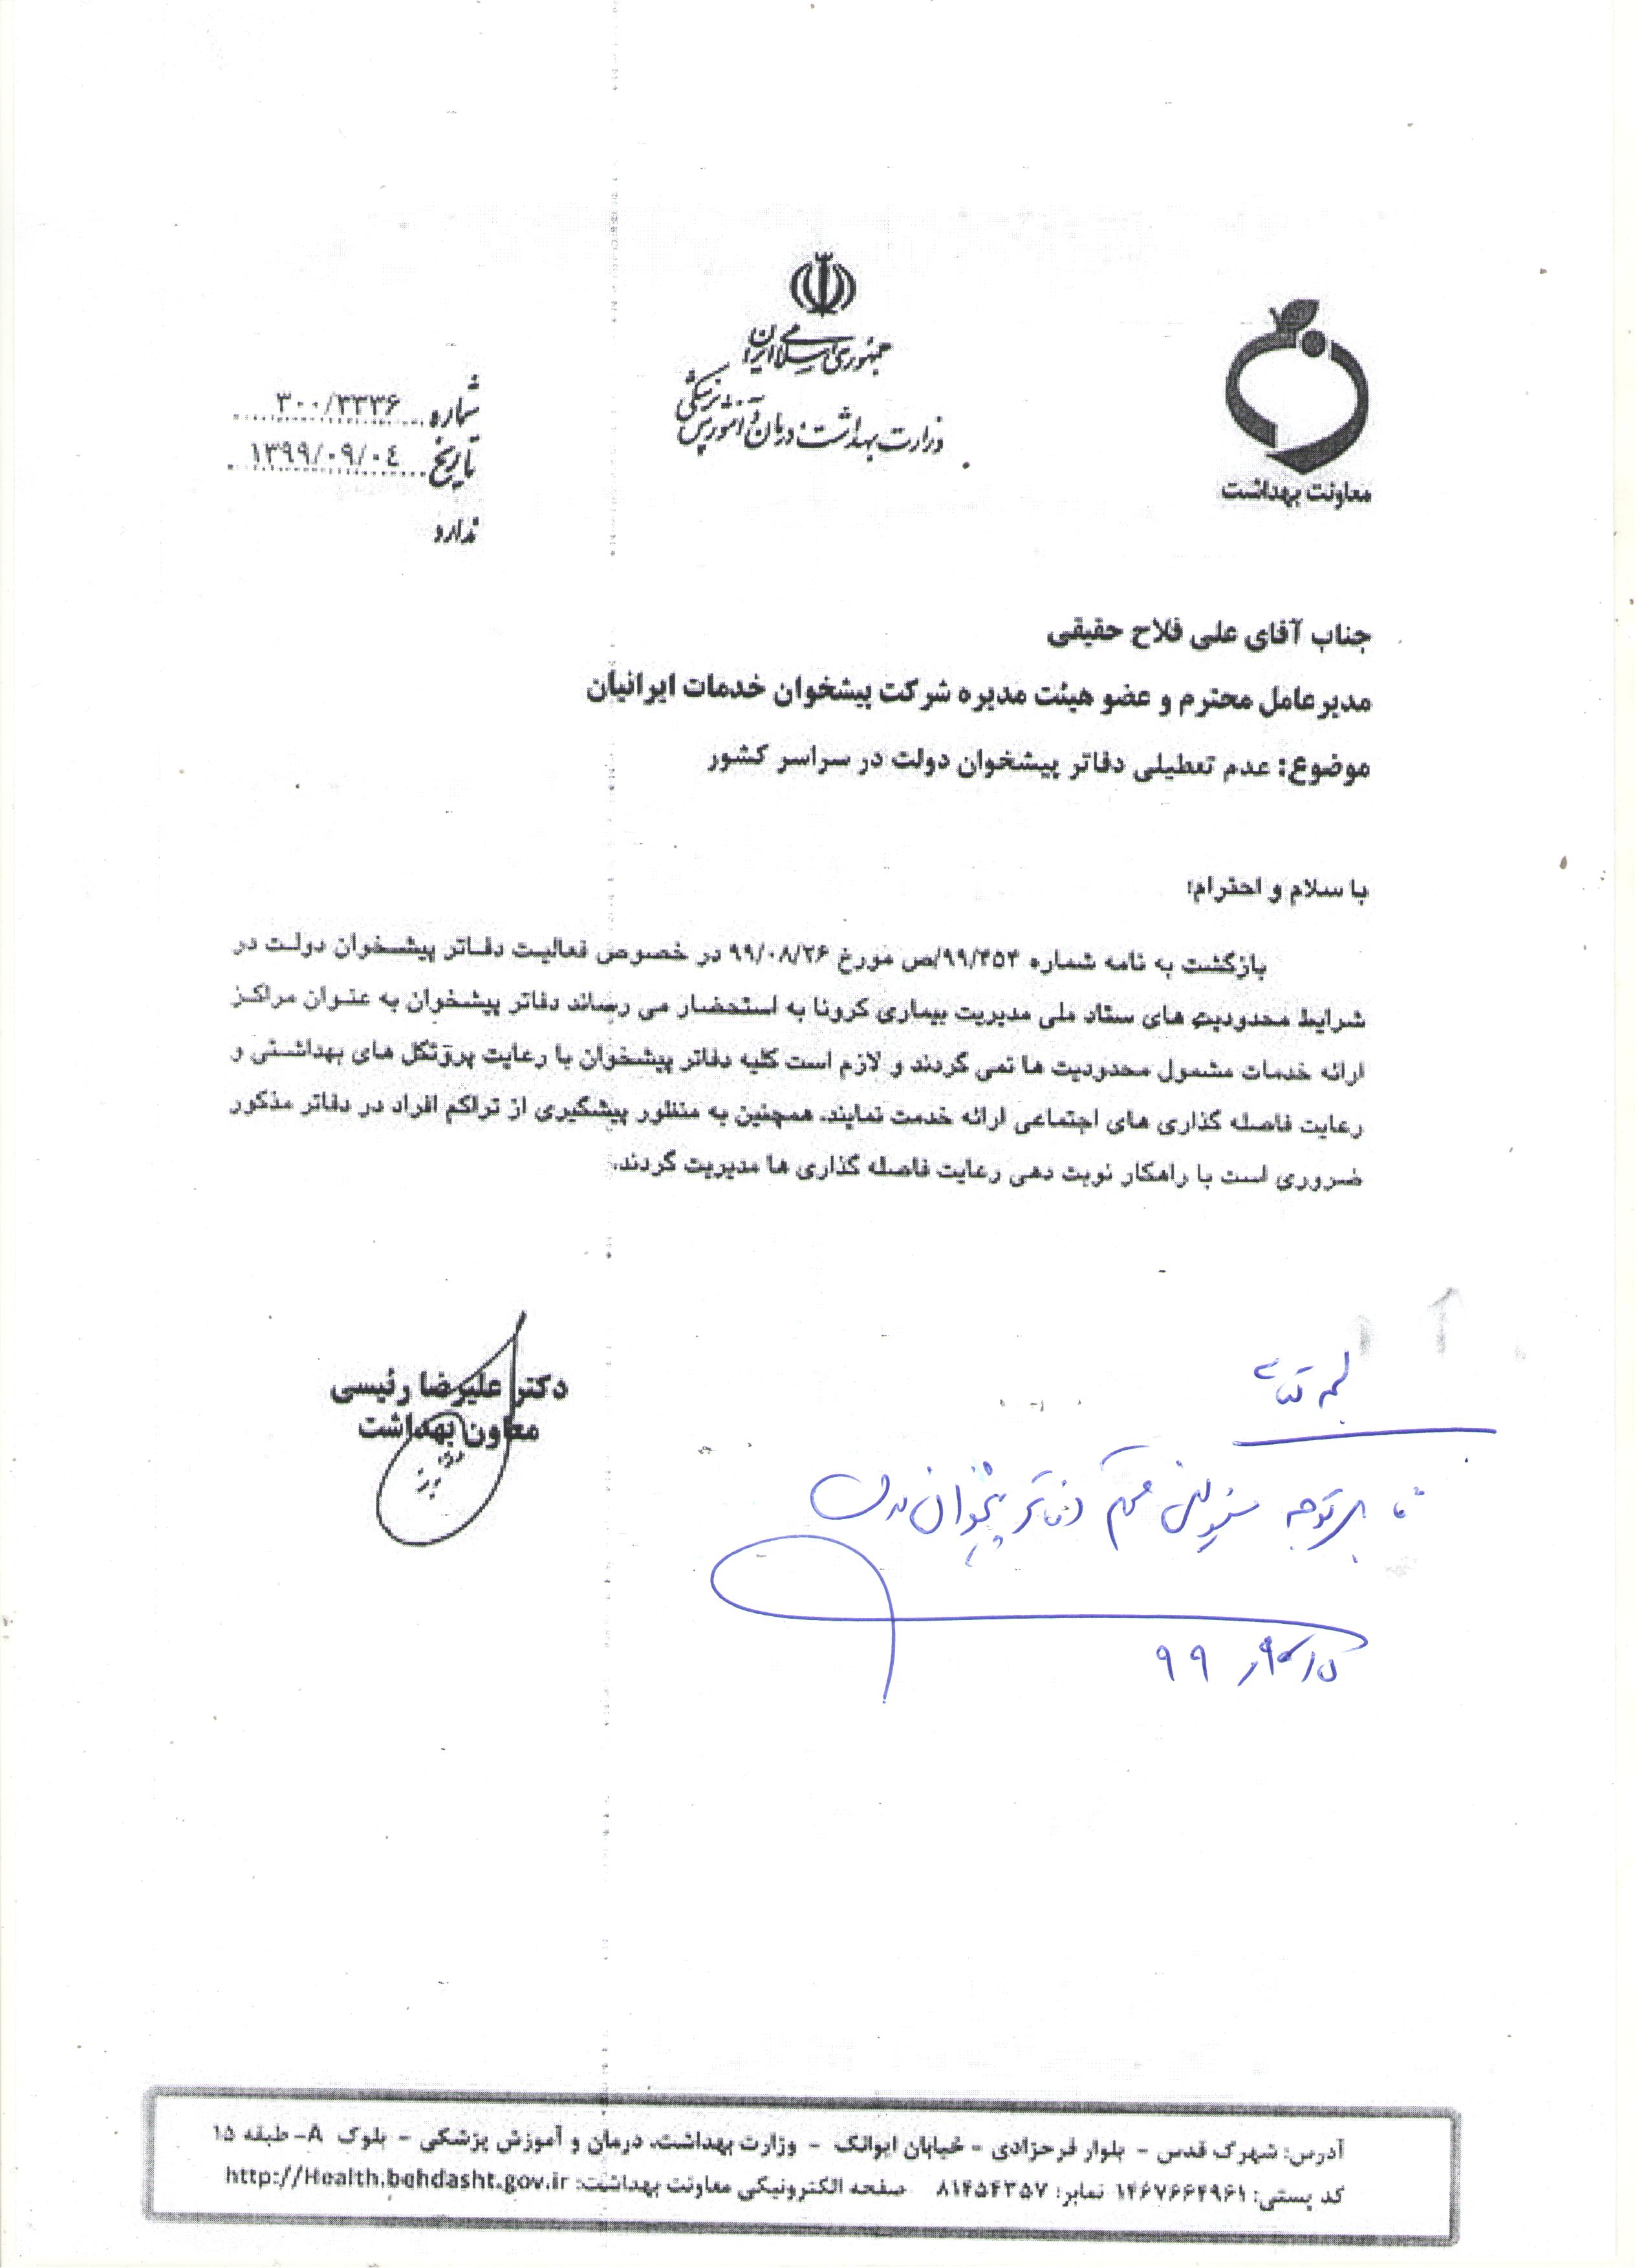 قابل توجه کلیه مسئولین دفاتر پیشخوان دولت استان اردبیل